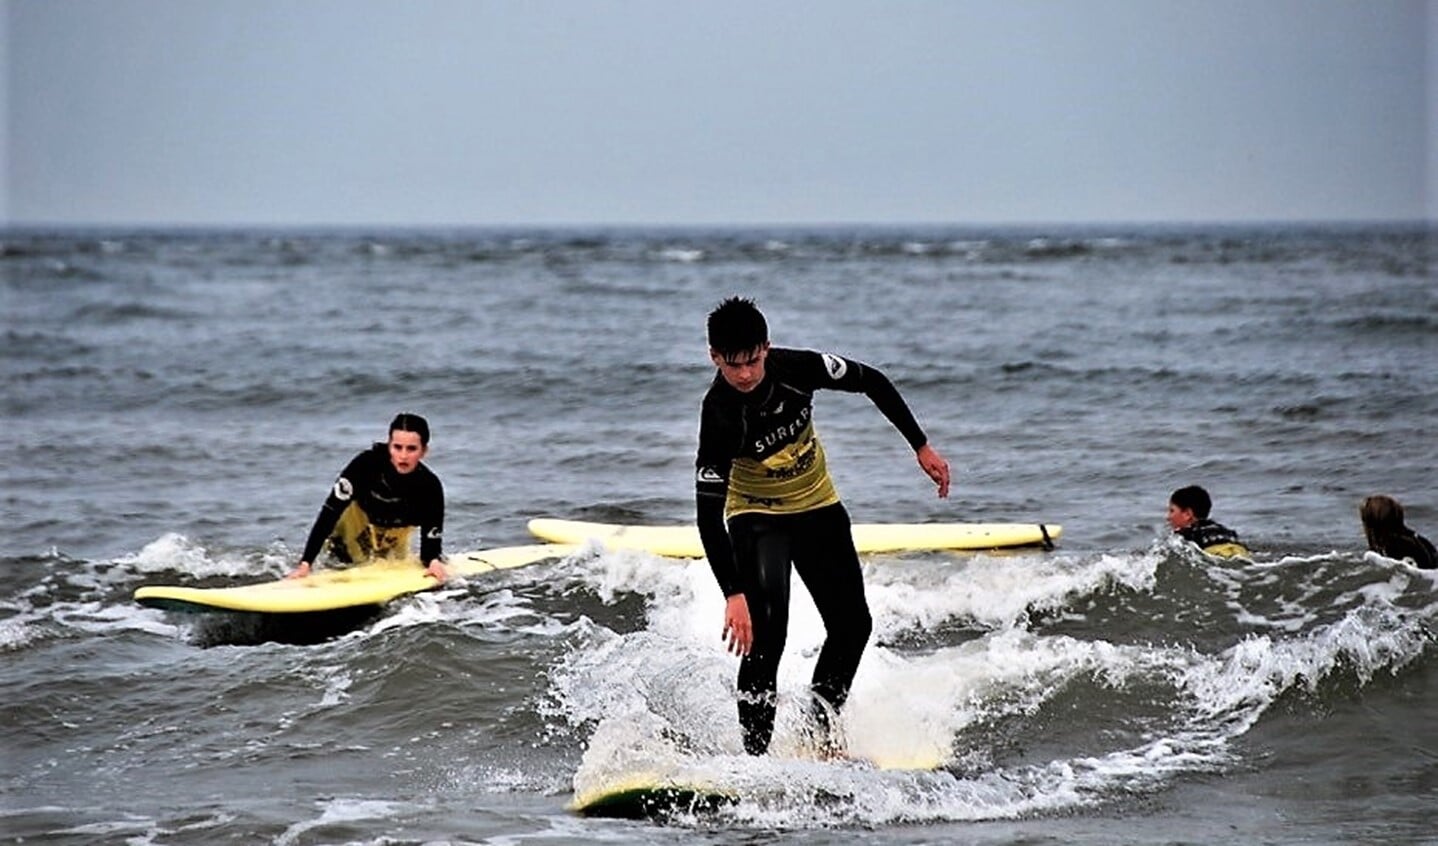 Leerlingen van het Wellantcollege wagen in zee een poging om te surfen op de golven (foto: pr Westvlietcollege).